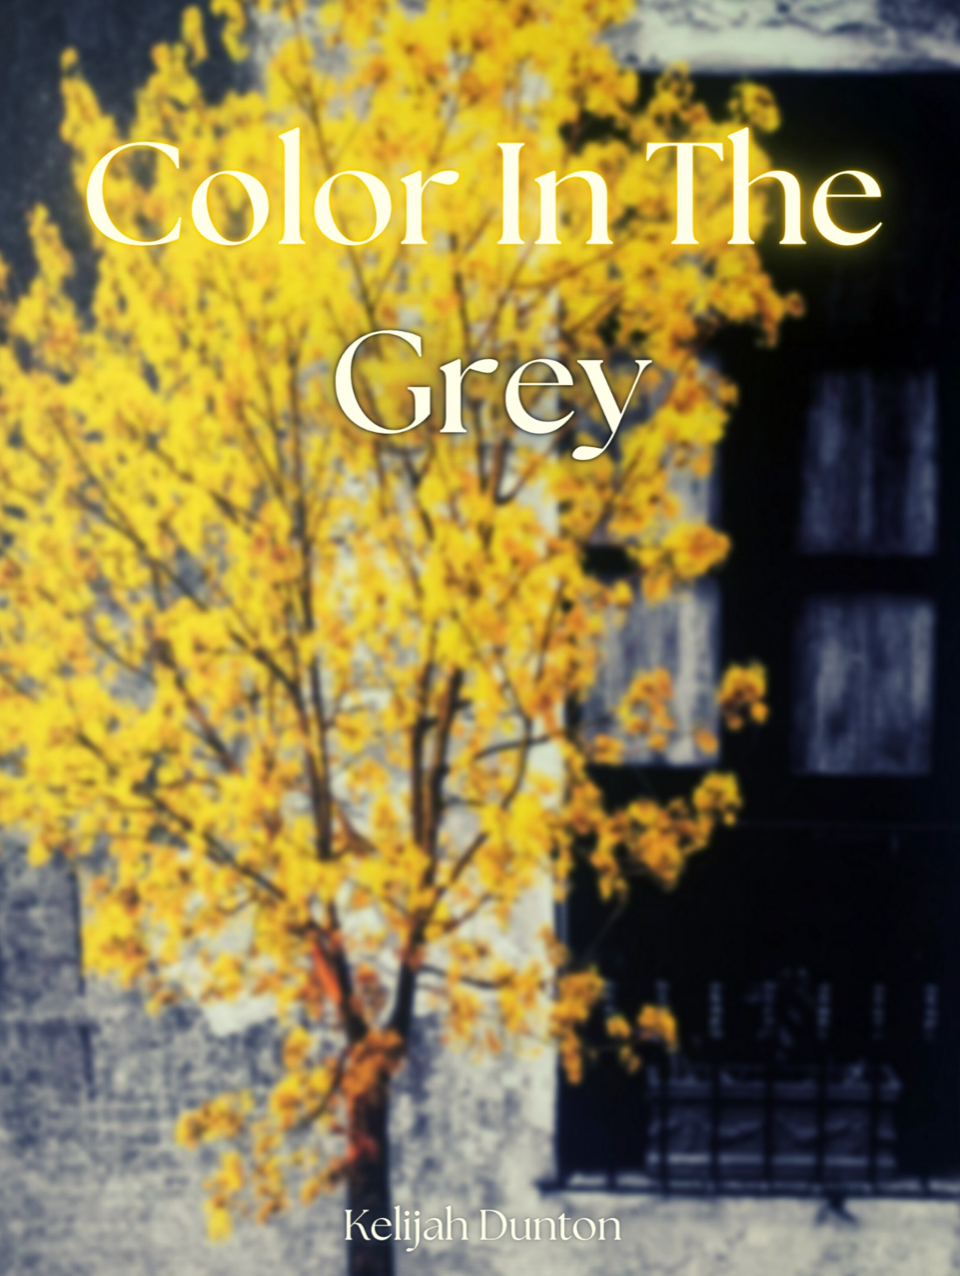 Color In The Grey by Kelijah Dunton